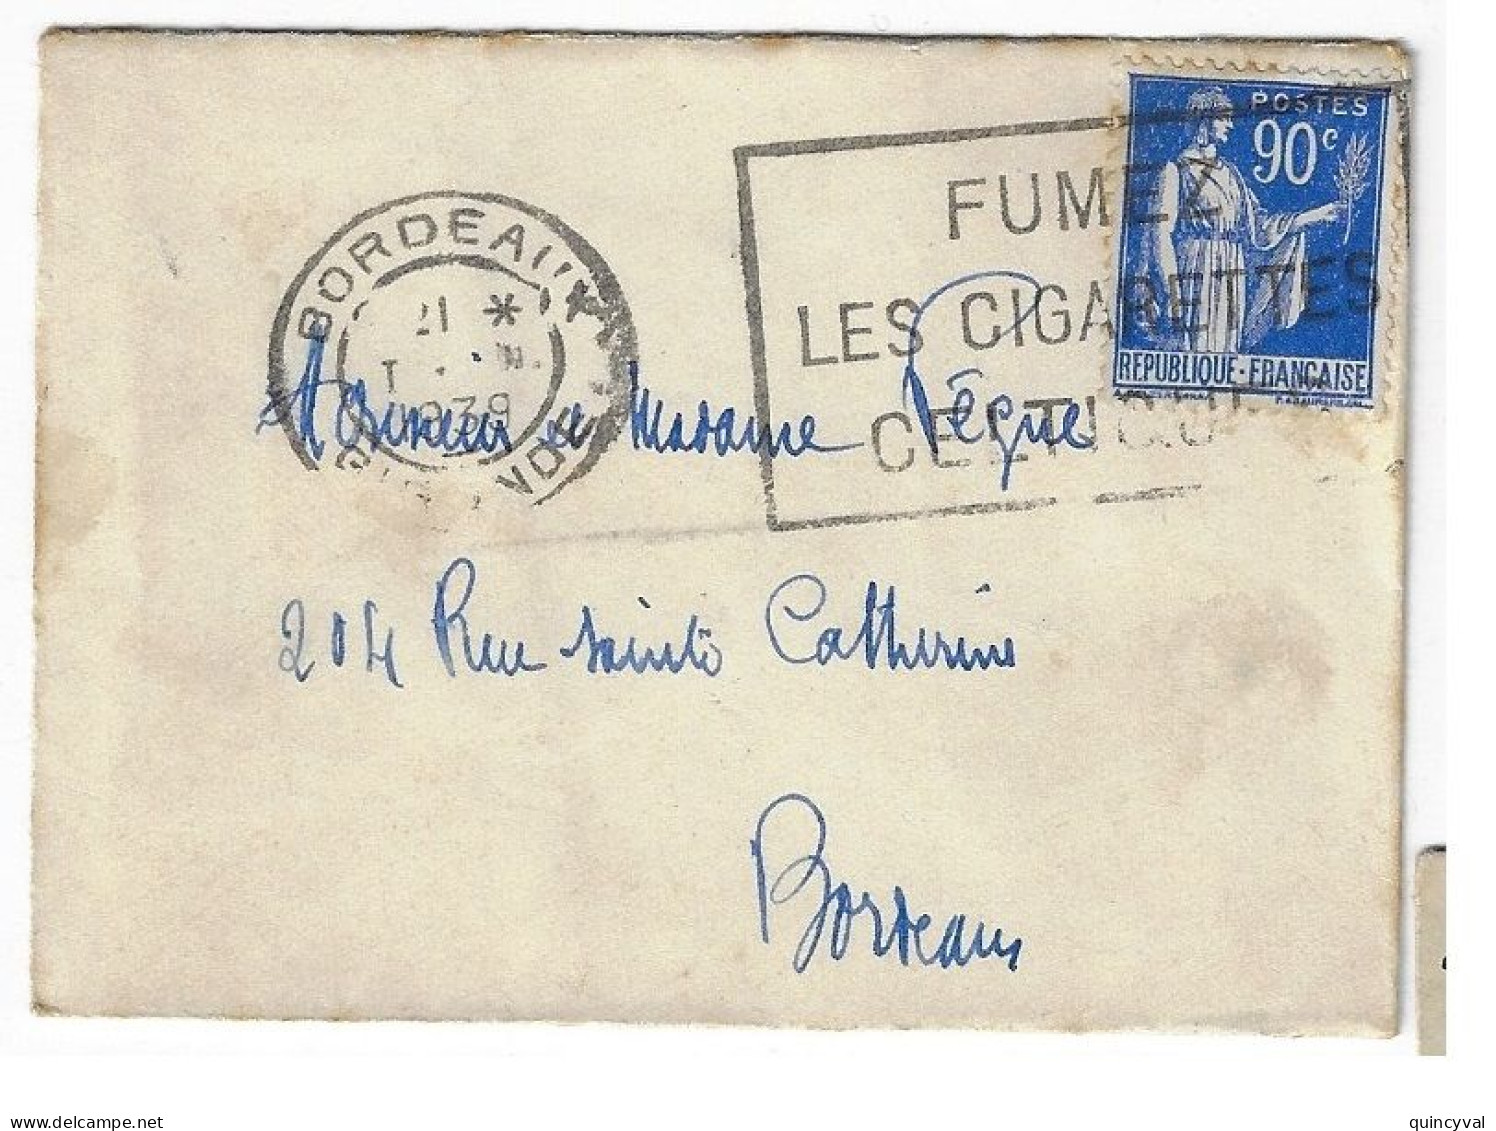 BORDEAUX Enveloppe Carte De Visite Mignonnette 90c Paix Yv 368 Ob Meca 1939 Fumez Cigarettes Celtiques - Storia Postale